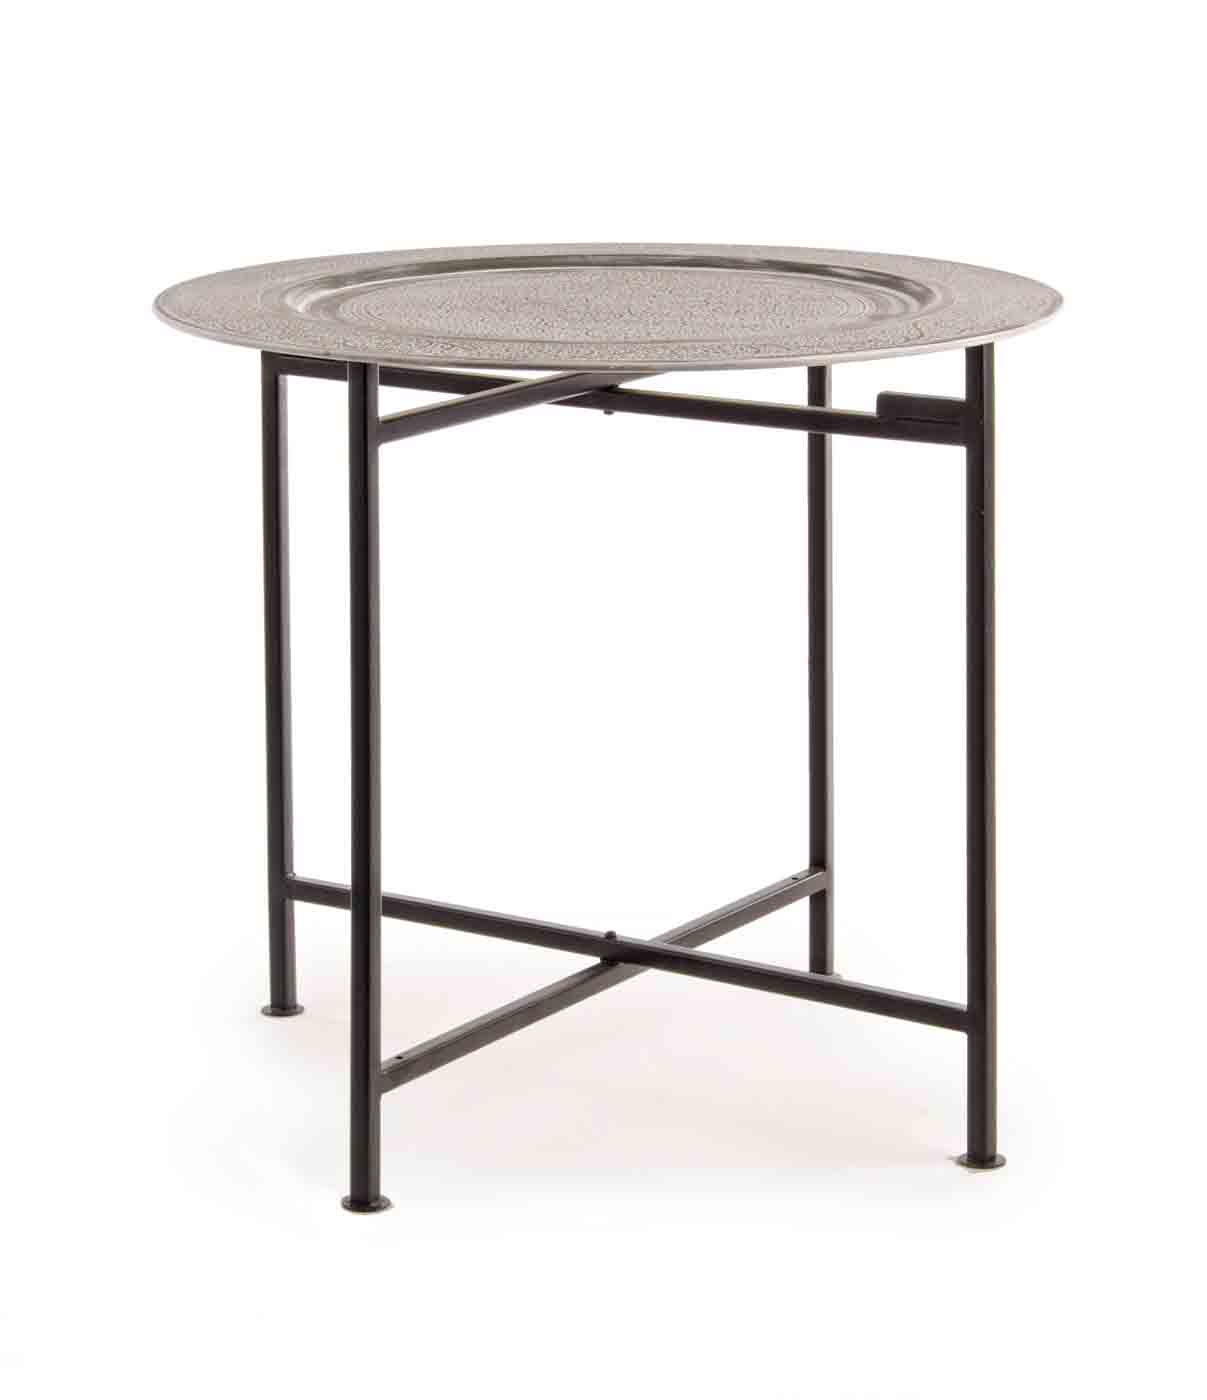 Der Beistelltisch Anil wurde aus Metall gefertigt. Die Oberfläche ist versilbert und abnehmbar. Der Tisch ist in verschiedenen Ausführungen erhältlich.